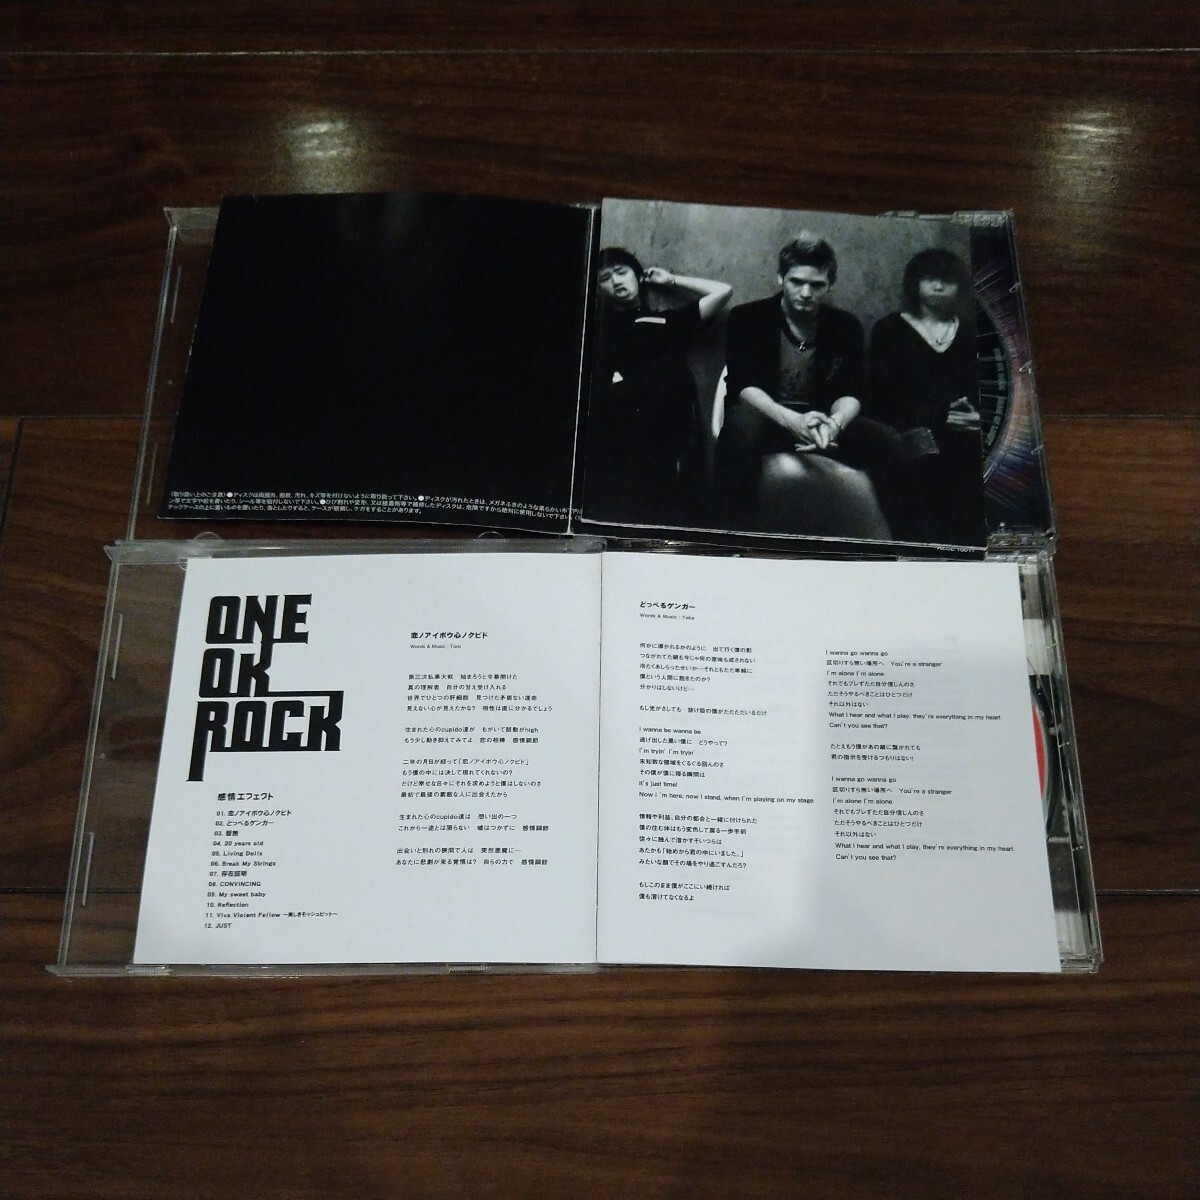 【送料無料】ONE OK ROCK CDアルバム 4タイトルセット BEAM OF LIGHT 感情エフェクト 人生×僕= Eye of the storm ワンオクロック_画像5